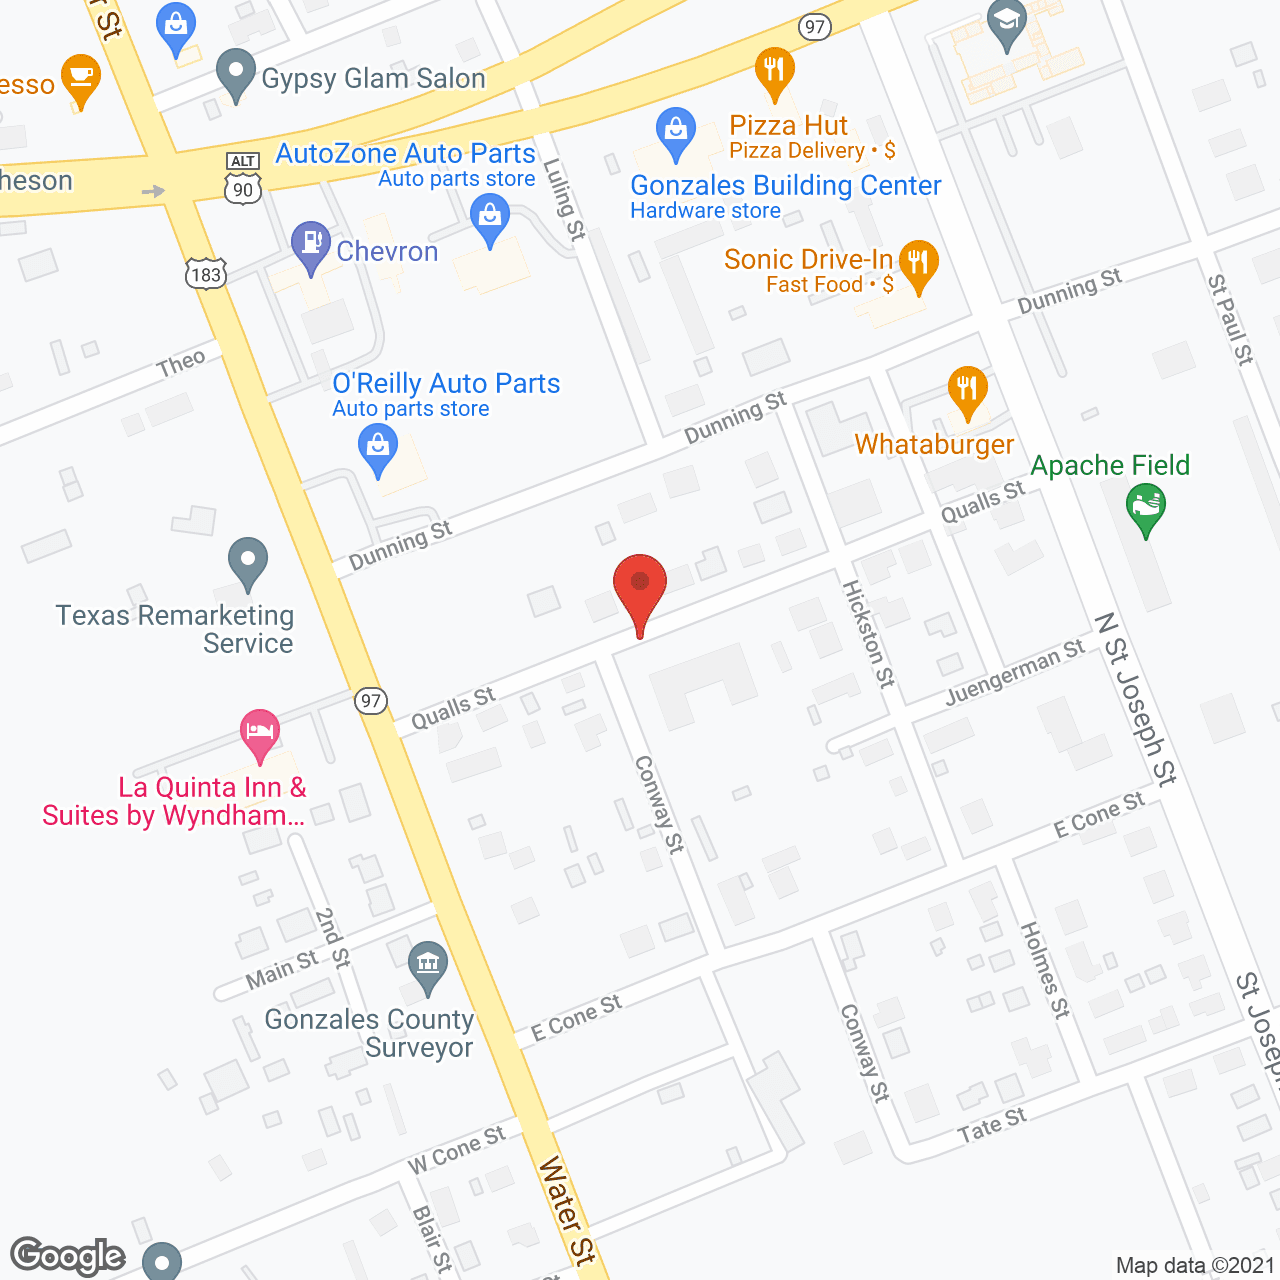 Romberg House in google map